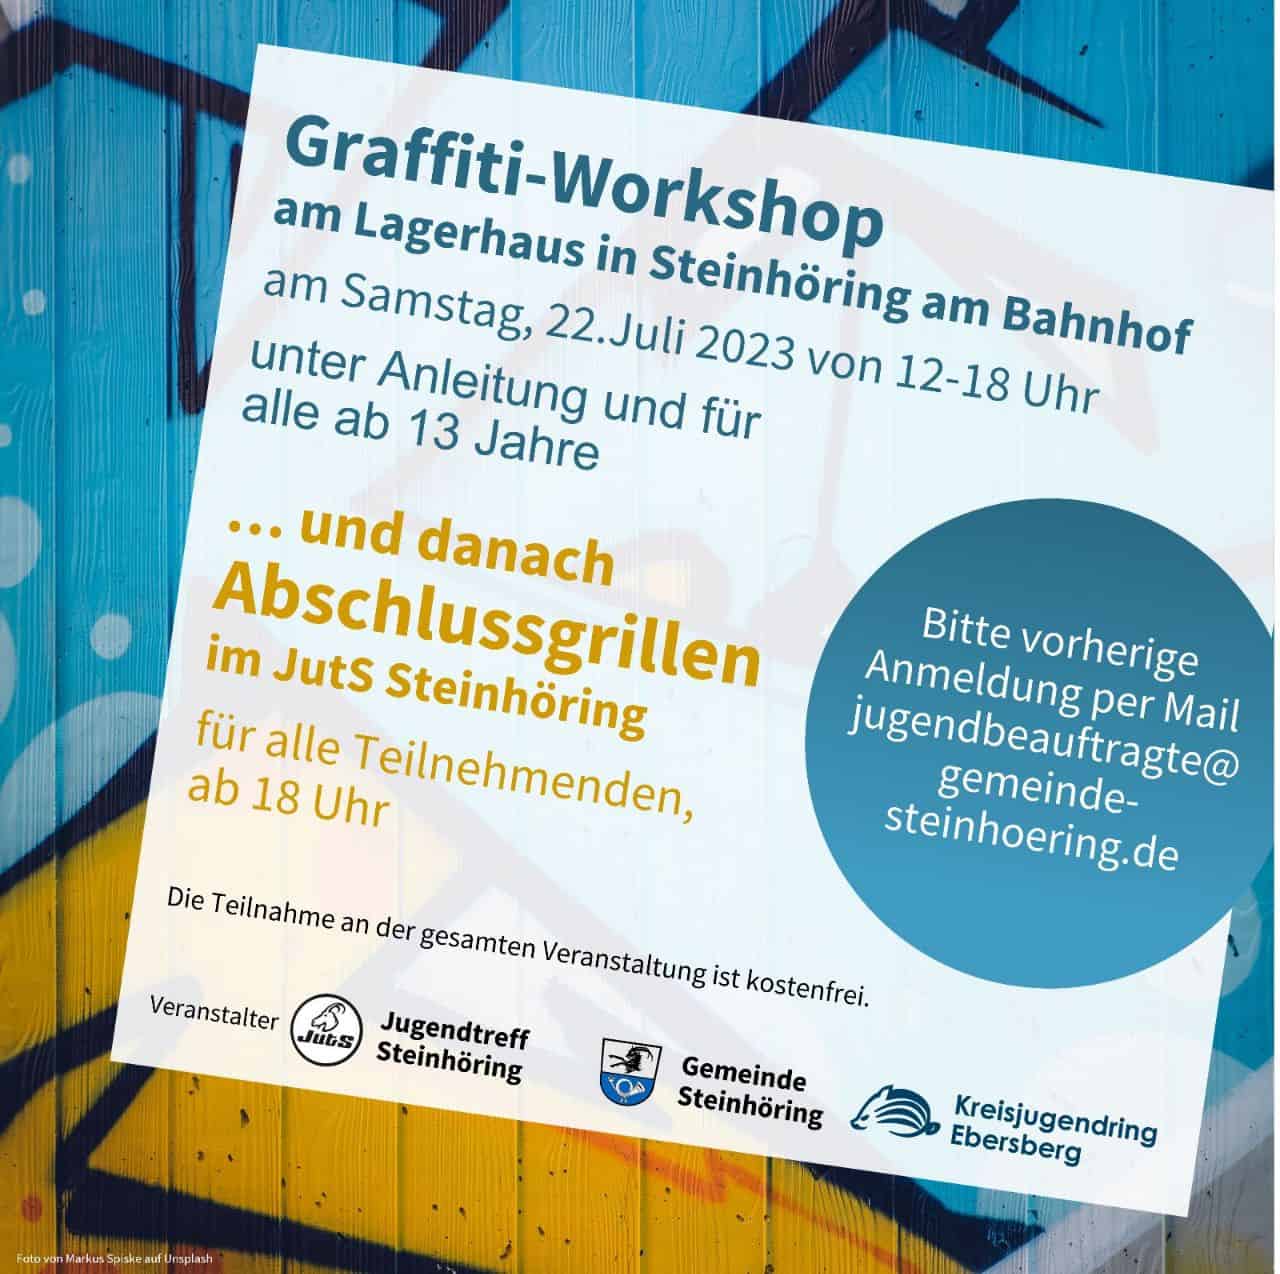 Graffiti-Workshop am Lagerhaus in Steinhöring am Bahnhof und Abschlussgrillen im Juts Steinhöring